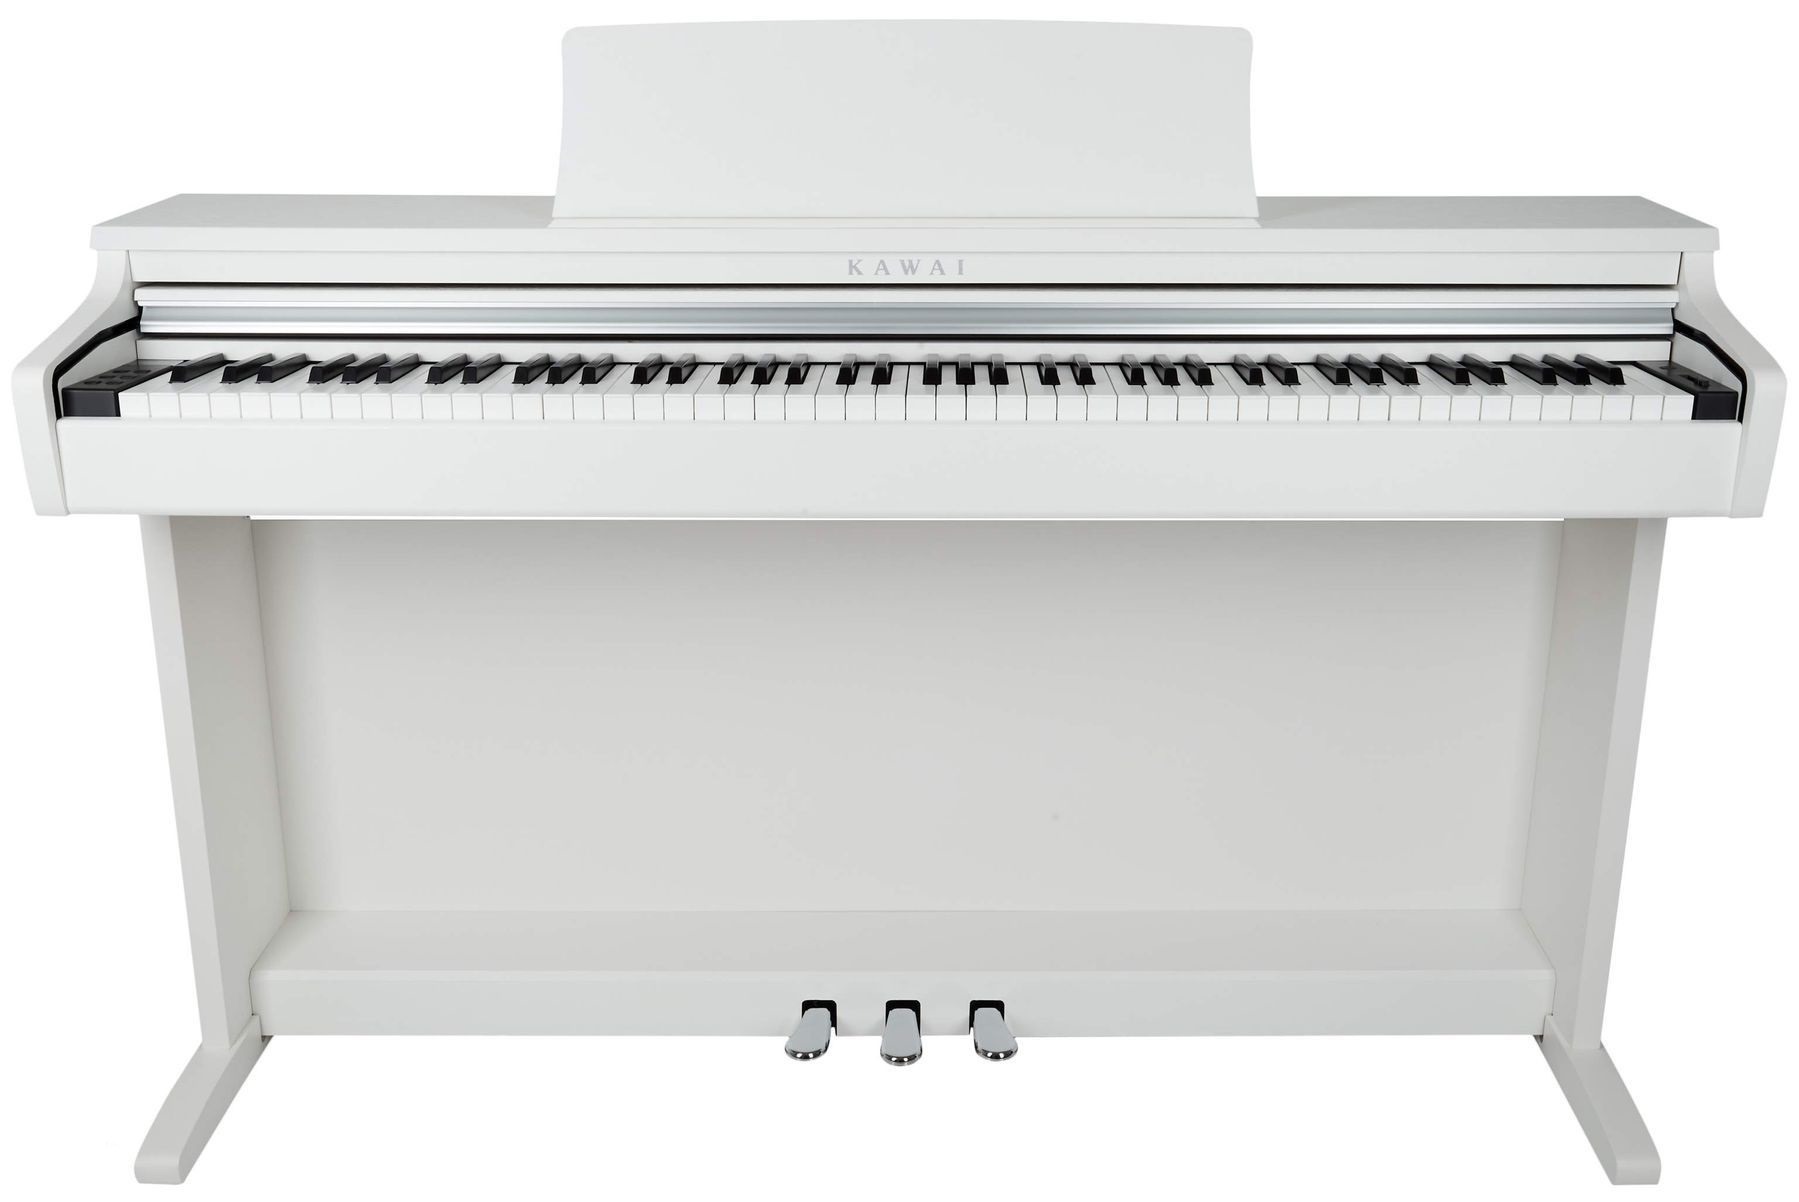 Цифровые пианино Kawai KDP120 W (с банкеткой) 88 клавишной клавиатурой электронных пианино крышка pleuche липучки украшен бахромой красивые